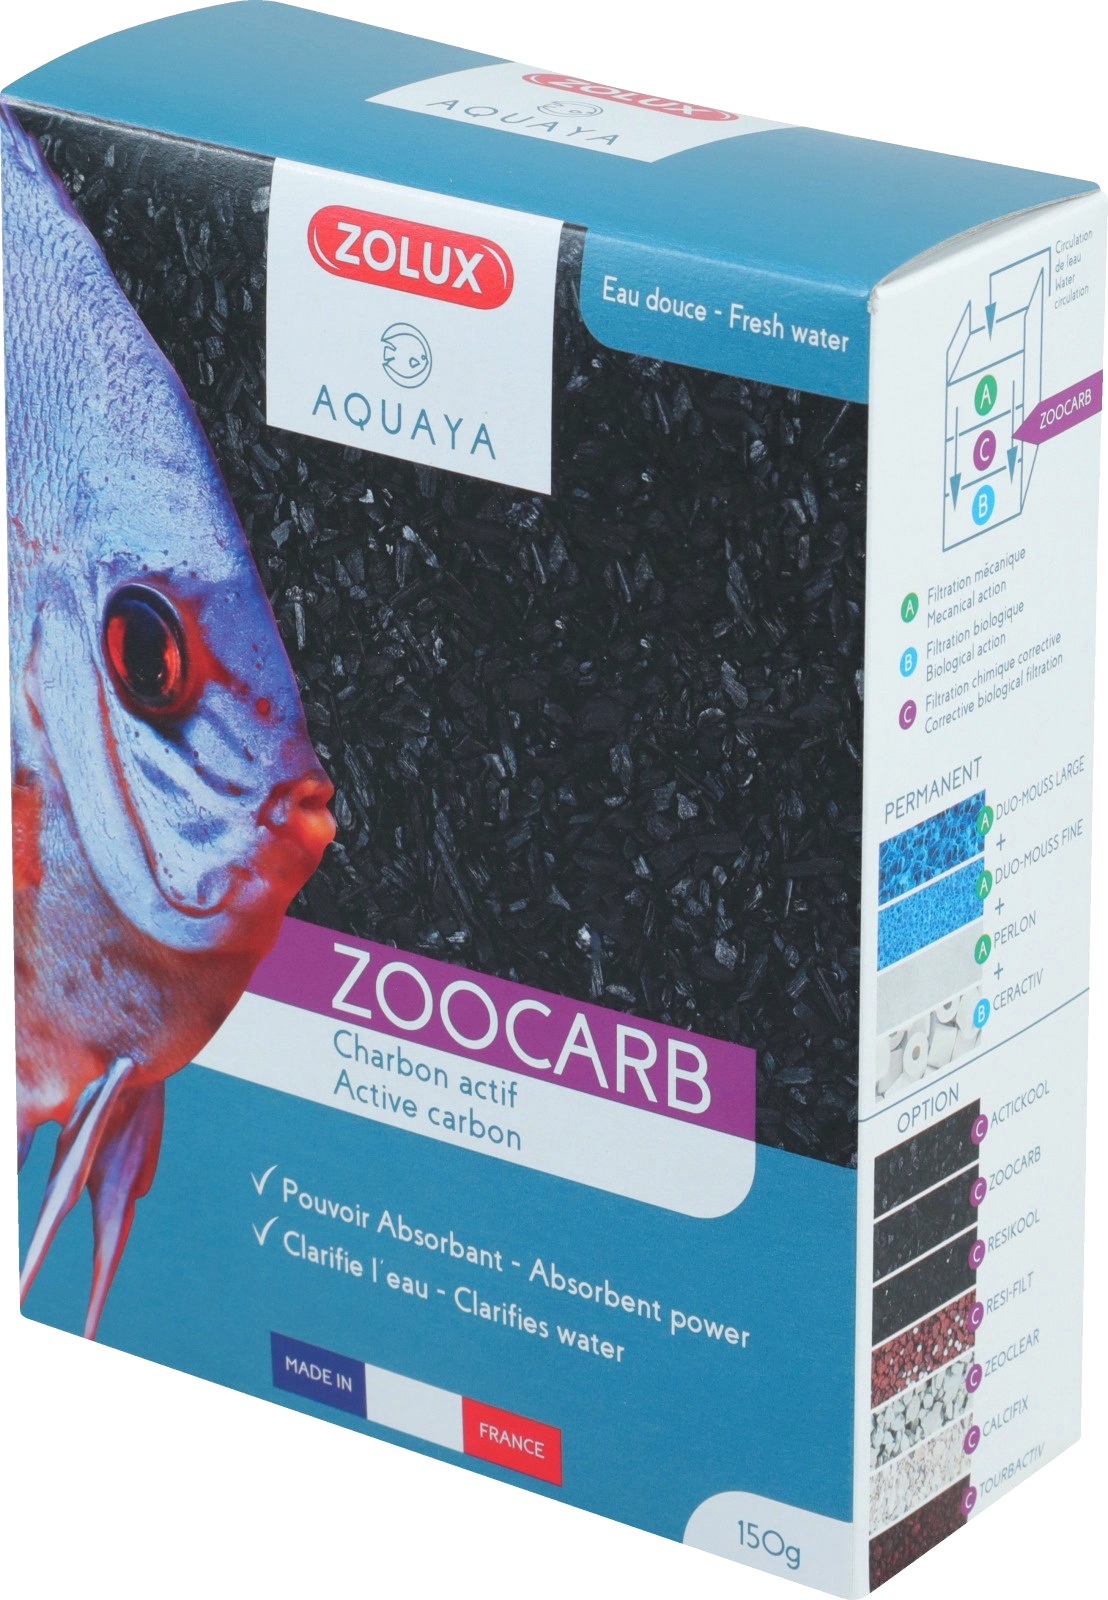 zolux-zoocarb-2-600-ml-charbon-de-filtration-pour-absorber-les-substances-polluantes-de-l-eau